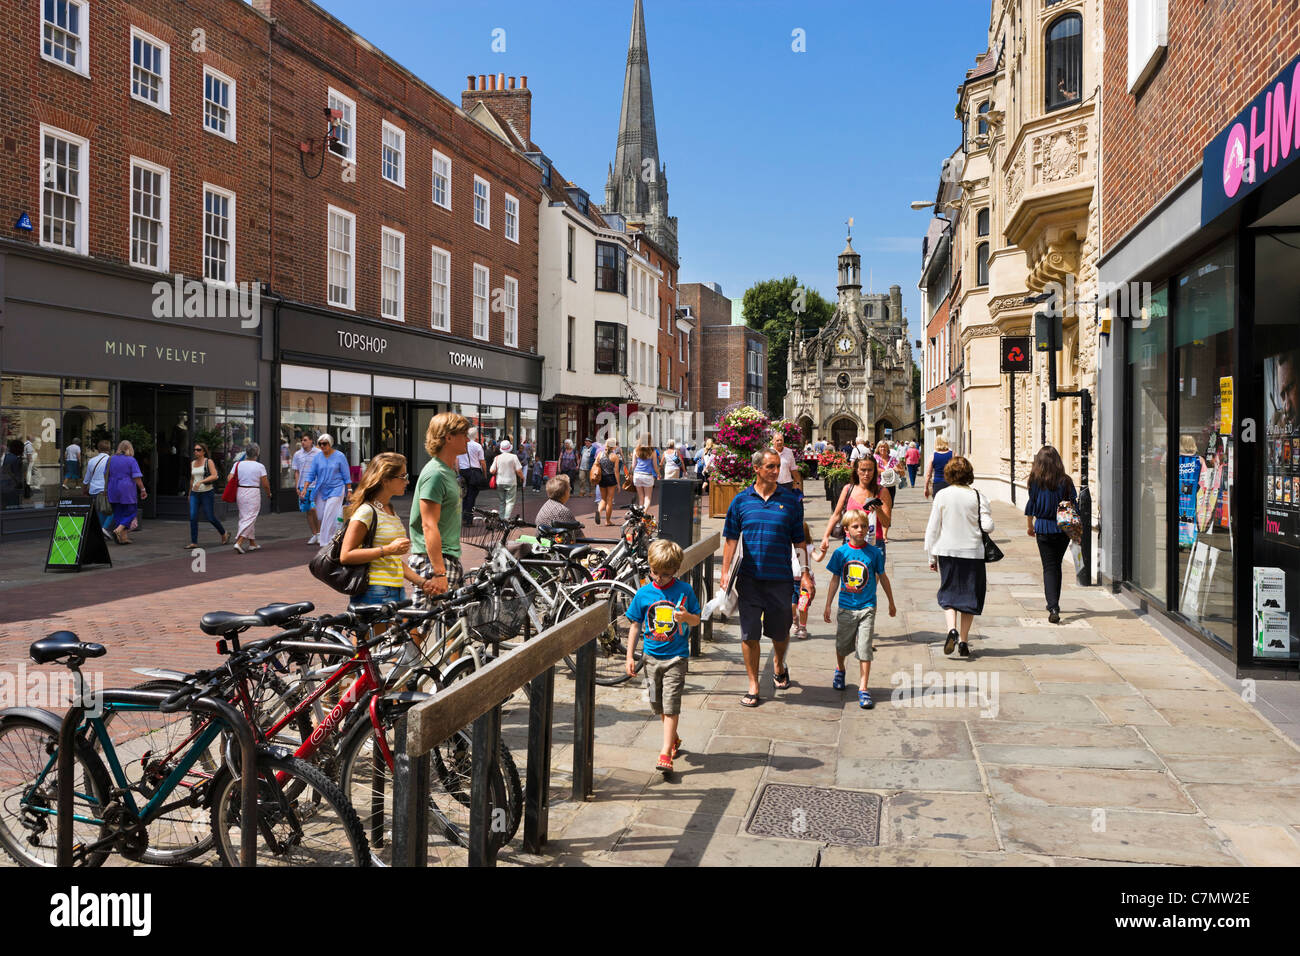 Tiendas en East Street en el centro de la ciudad, mirando hacia la catedral, Chichester, West Sussex, Inglaterra, Reino Unido. Foto de stock